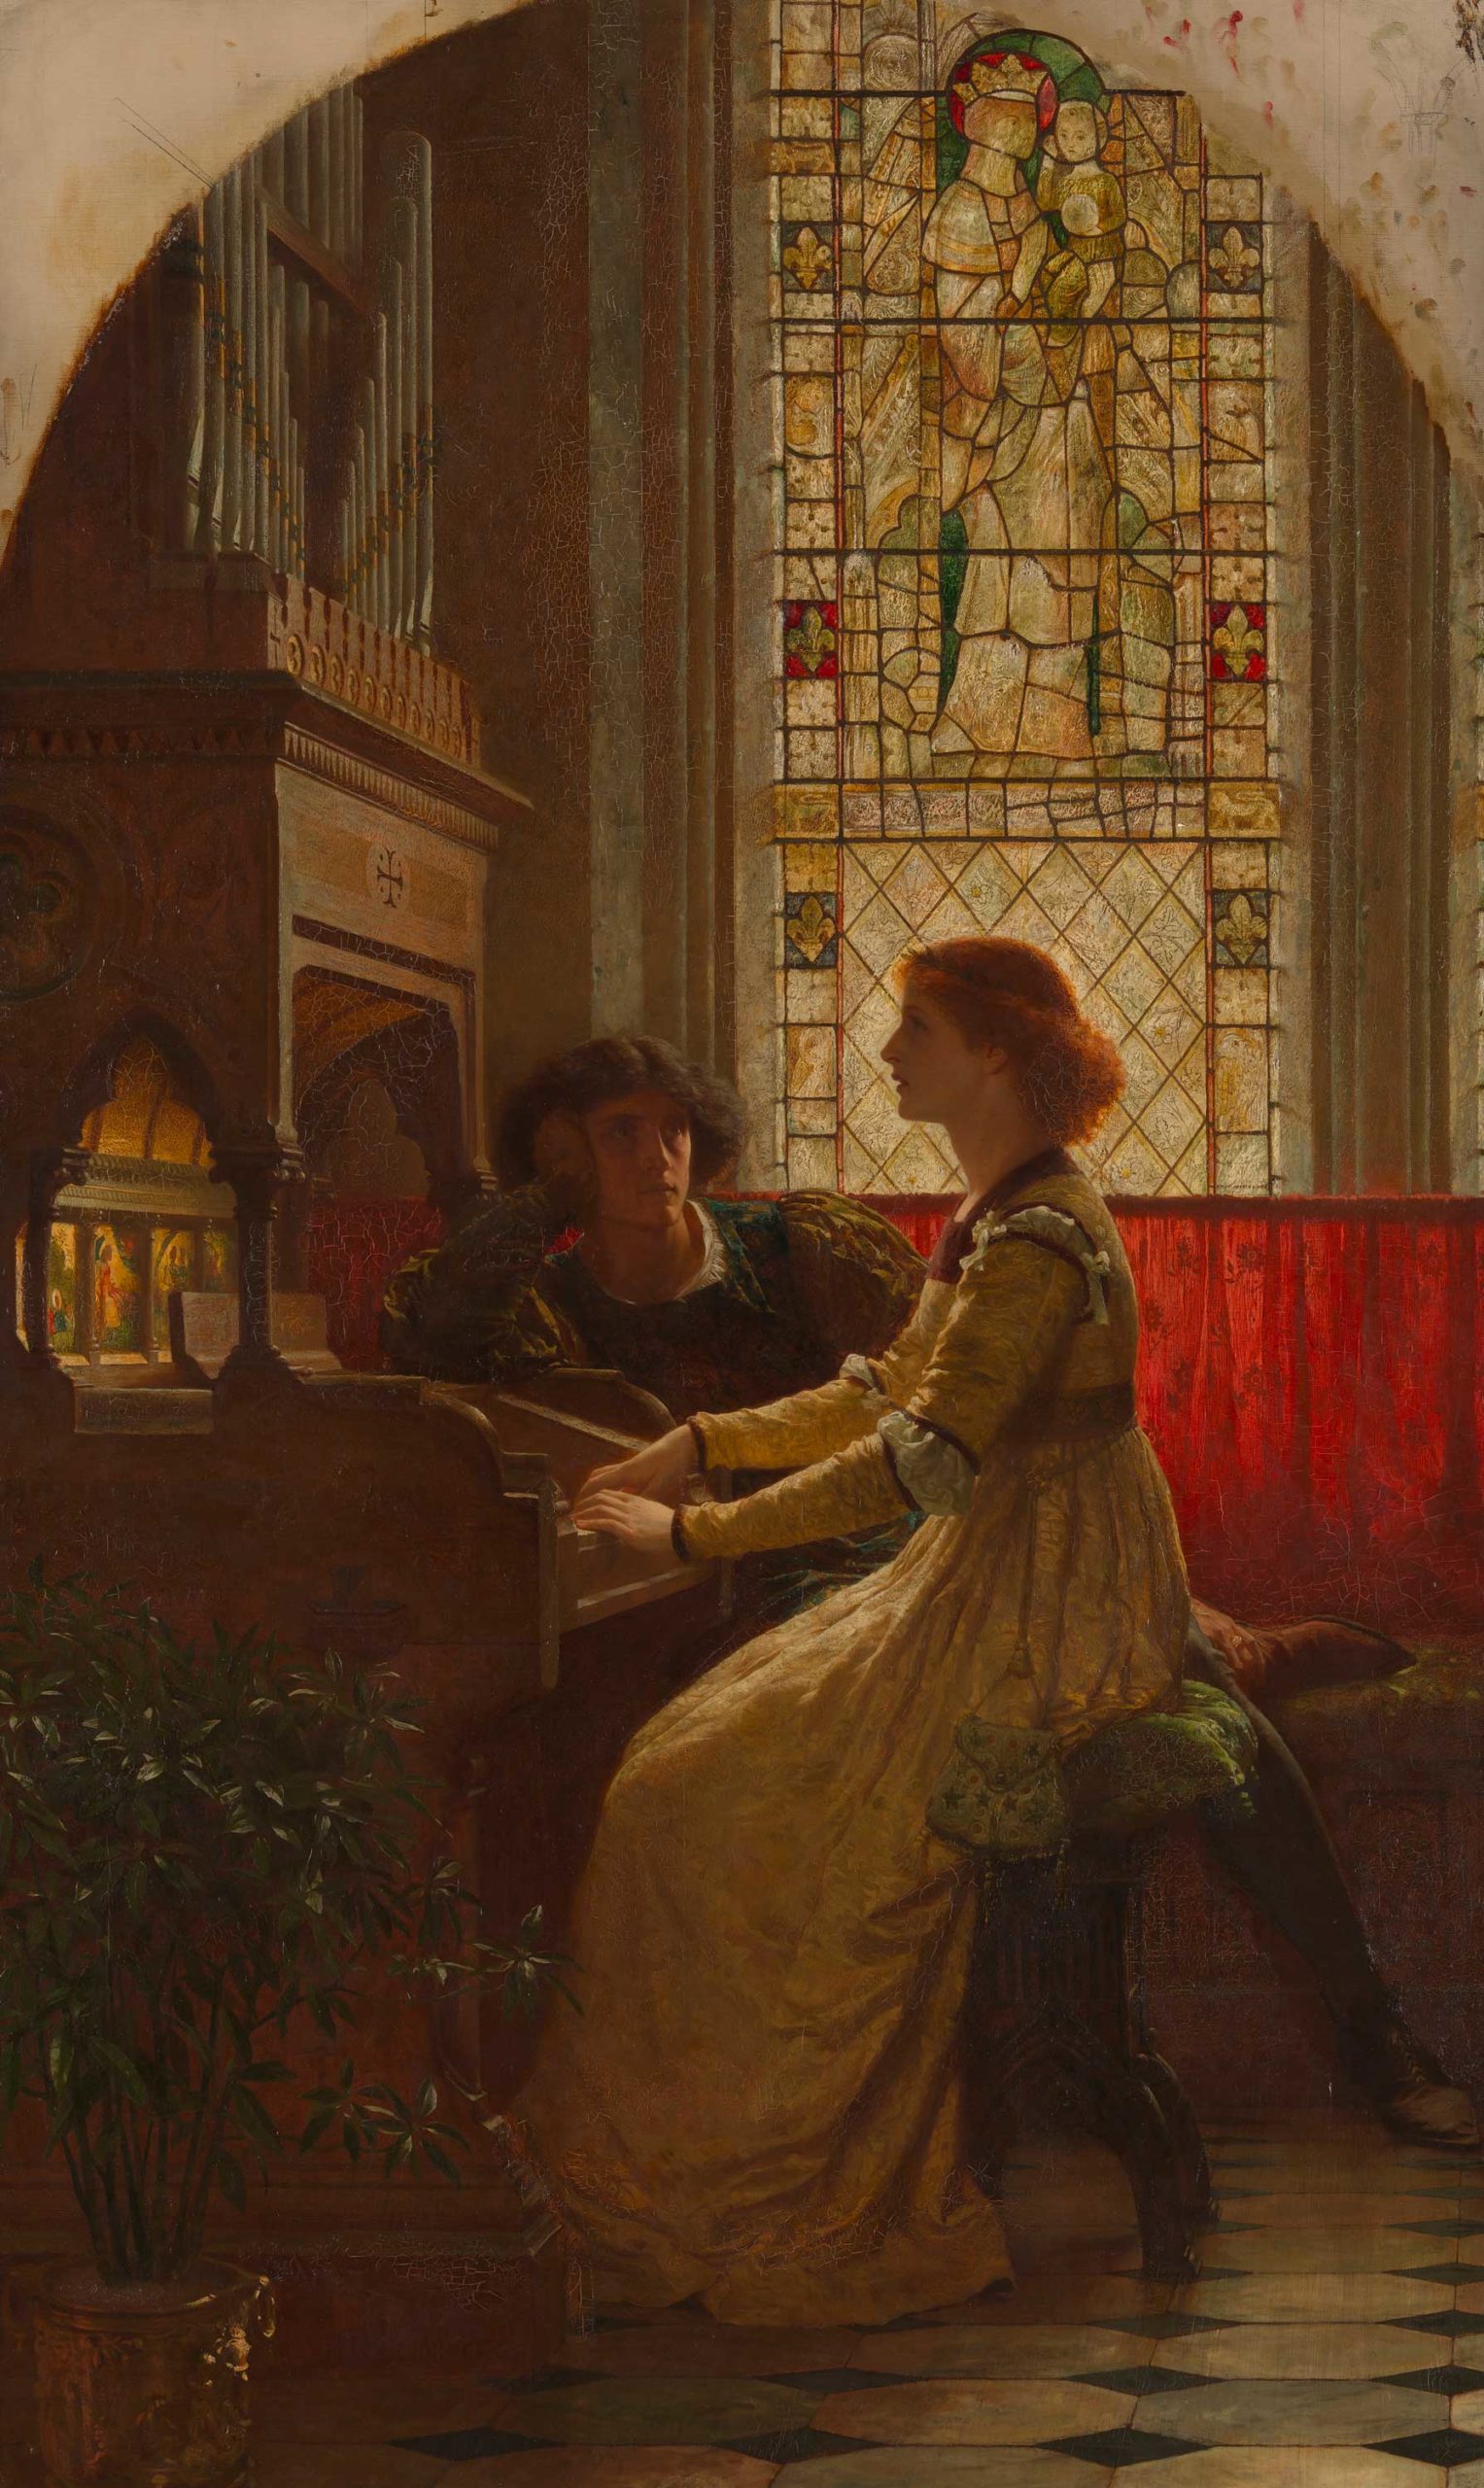 Frank Dicksee, "Harmony," 1877, oil on canvas, Tate